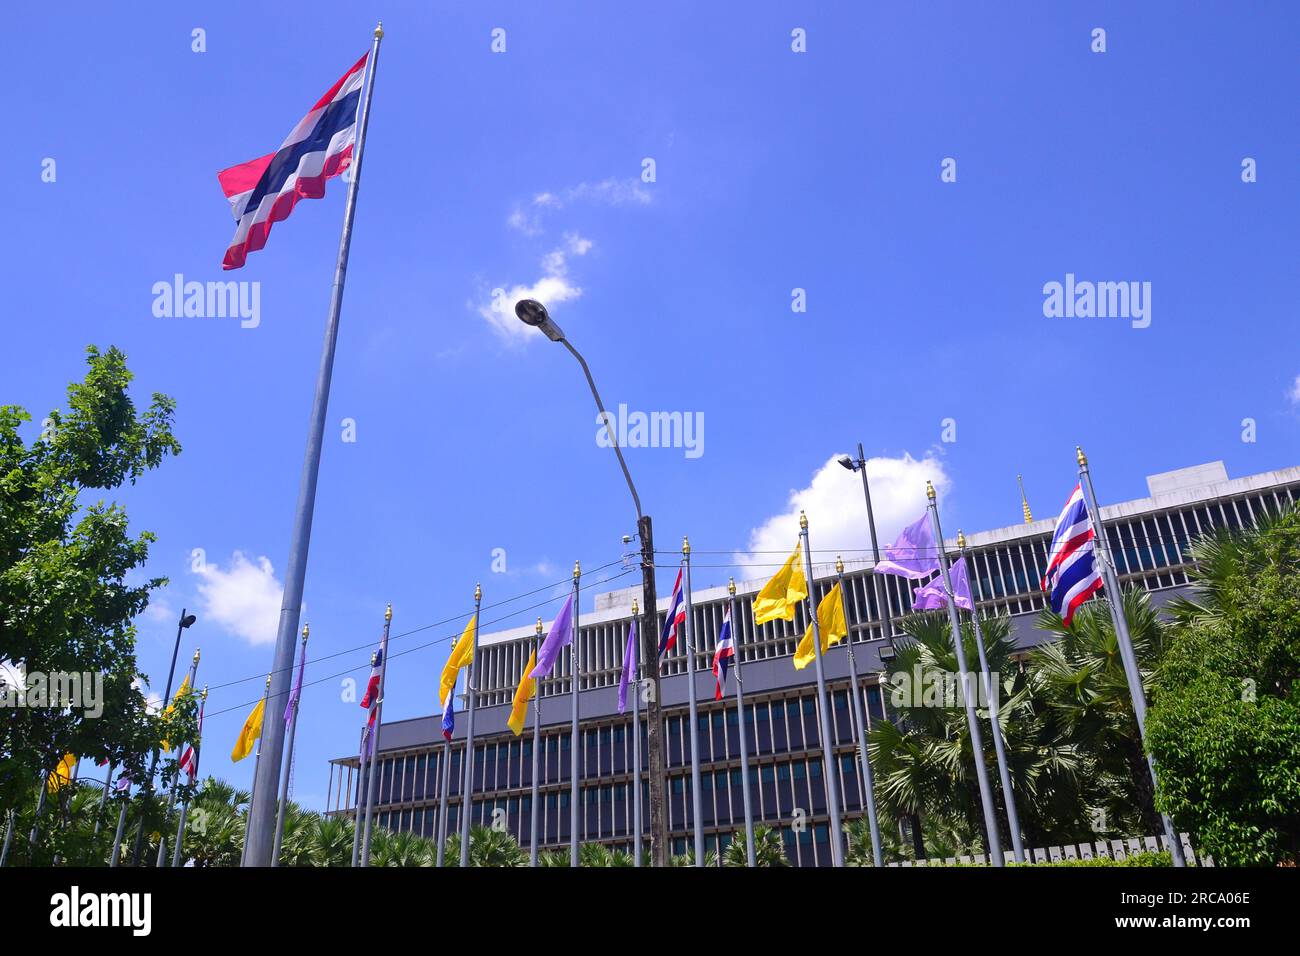 Bâtiment du Parlement, Bangkok. Plus tard dans la journée, une manifestation aura lieu à proximité. Le Parlement vote le 13 juillet pour décider si le leader du parti Move Forward, Pita Limjaroenrat, qui a remporté le plus grand nombre de sièges aux élections de mai, peut devenir le nouveau Premier ministre, mettant fin à 9 ans de règne de l'ancien chef de l'armée Prayuth Chan-ocha Banque D'Images